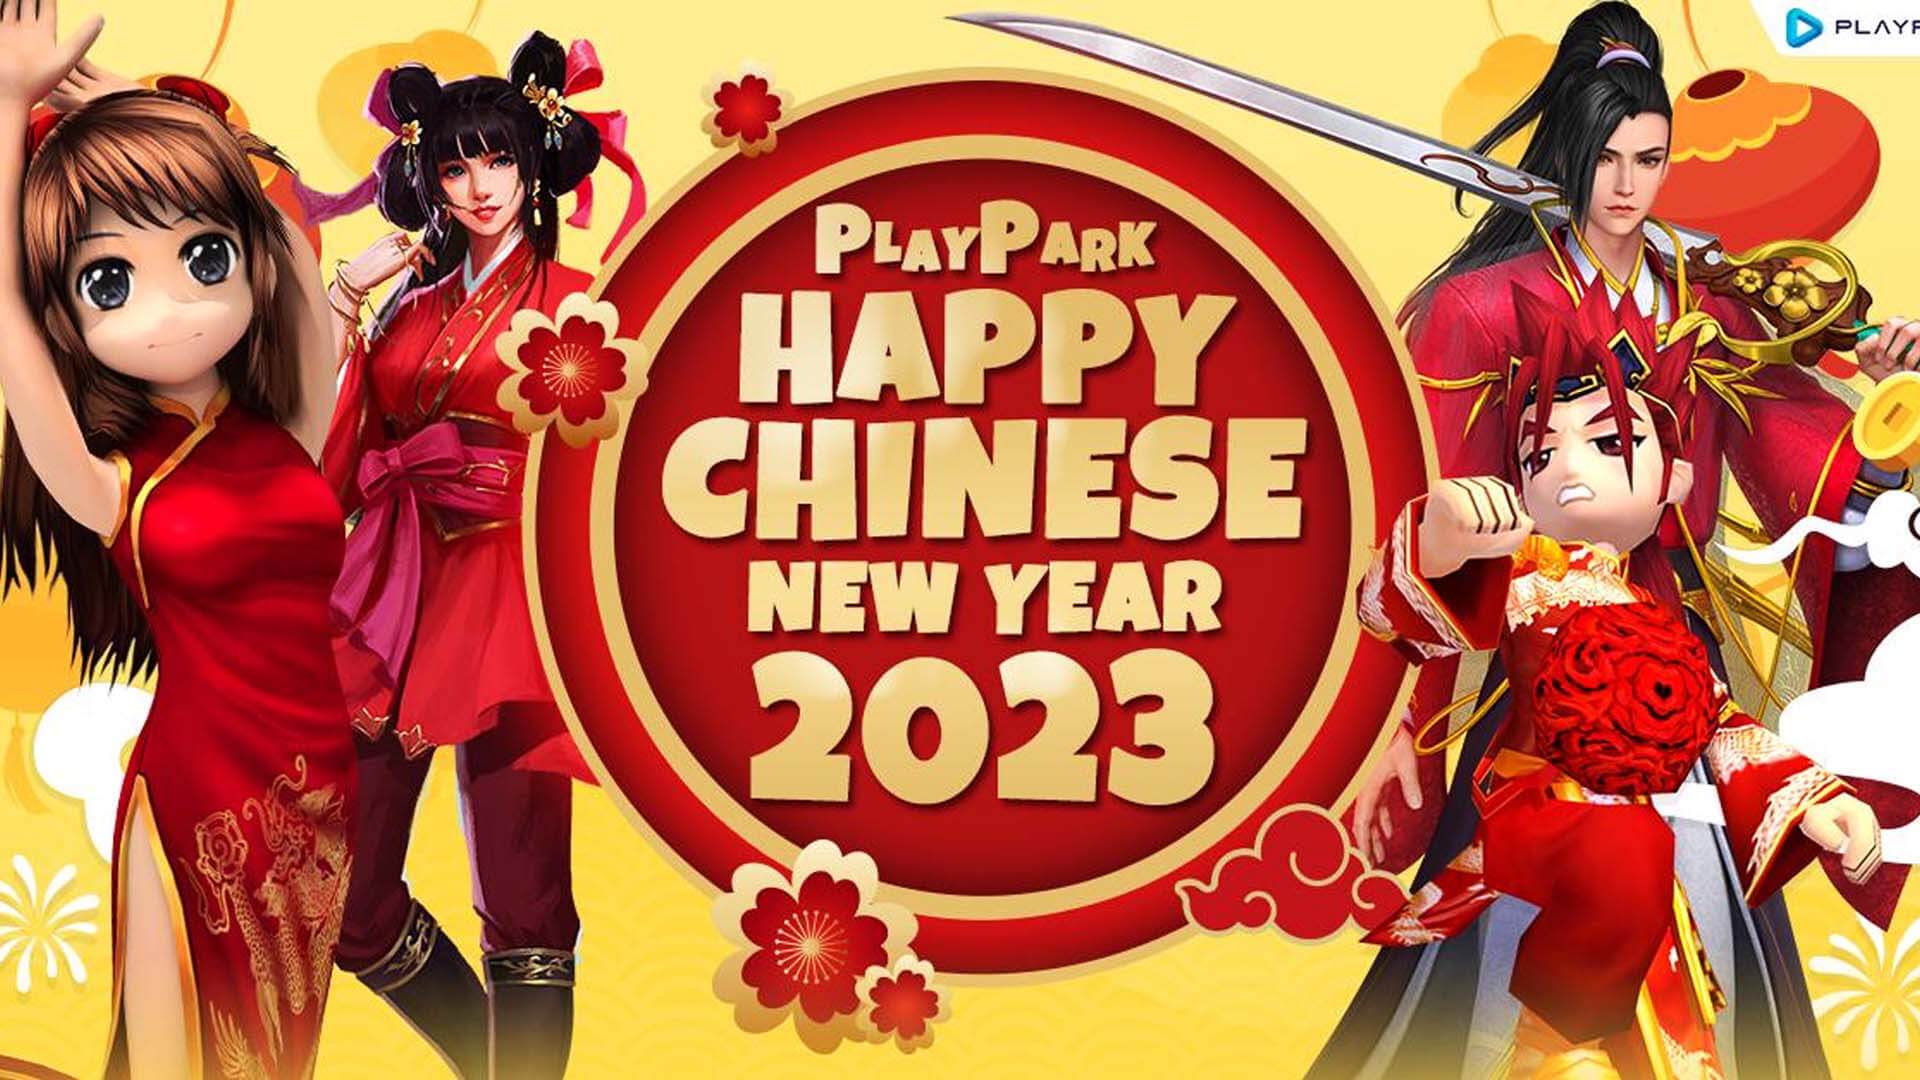 PlayPark Chinese New Year 2023